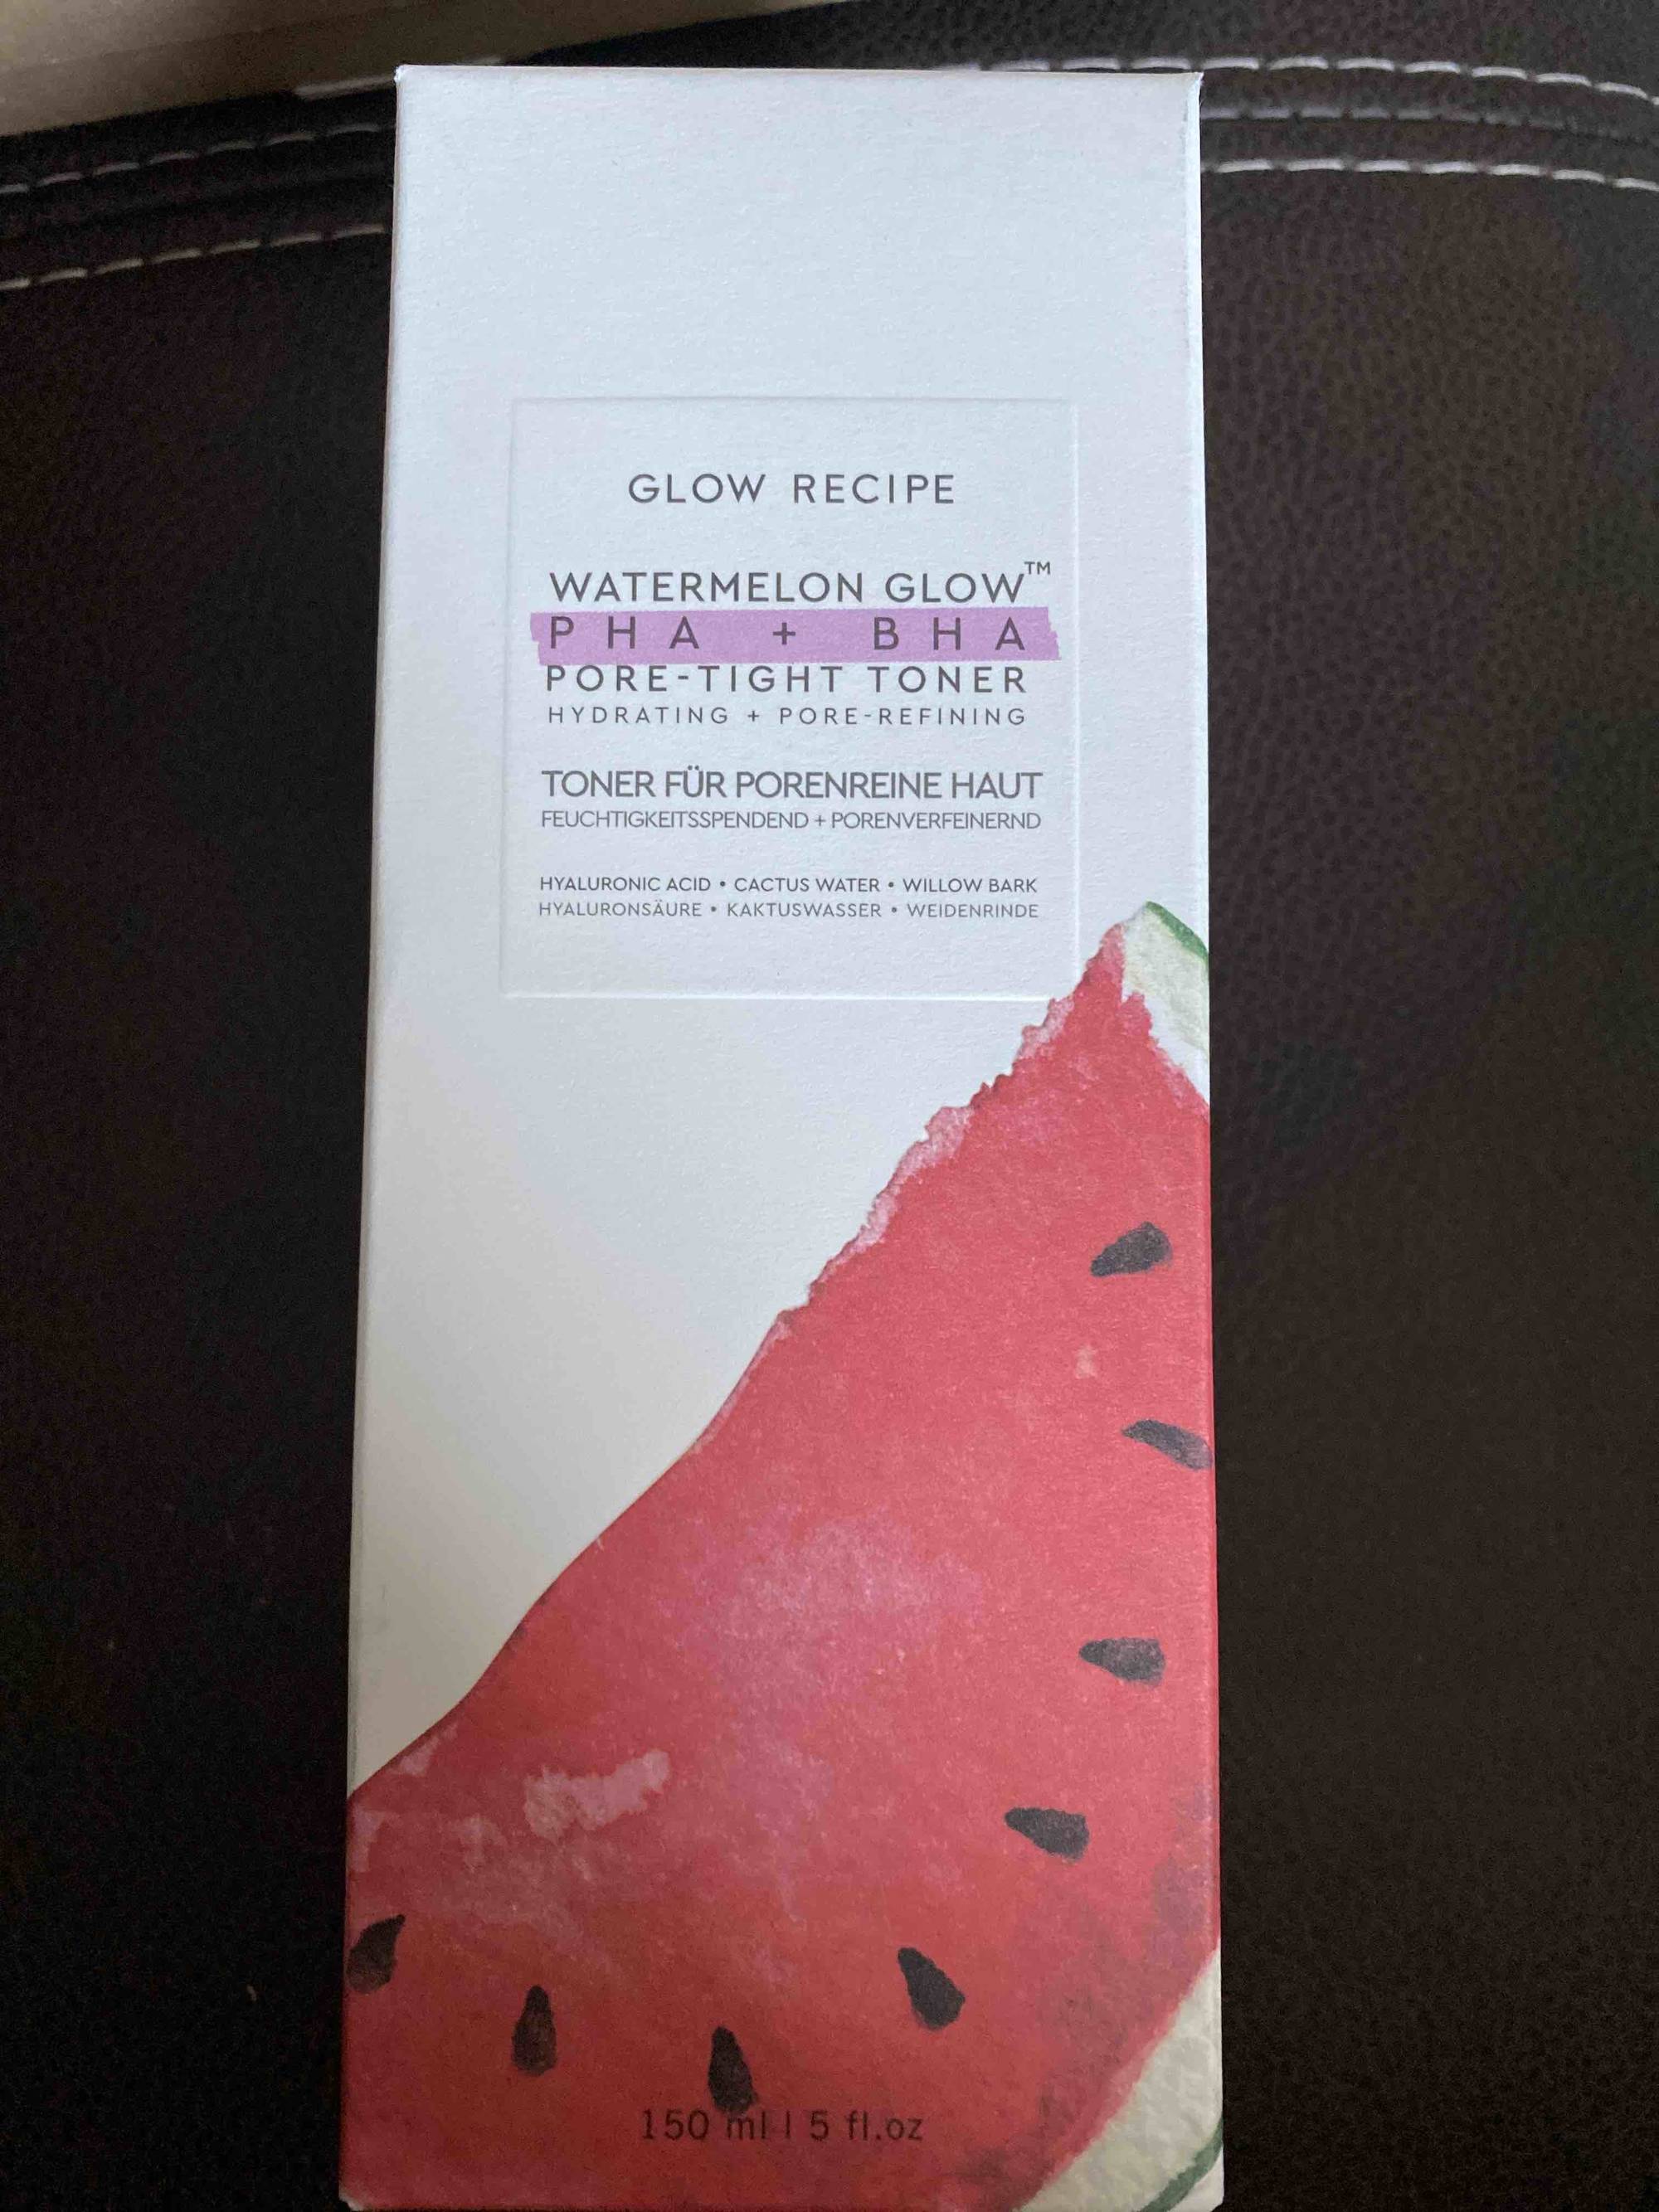 GLOW RECIPE - Watermelon glow - Toner für porenreine haut